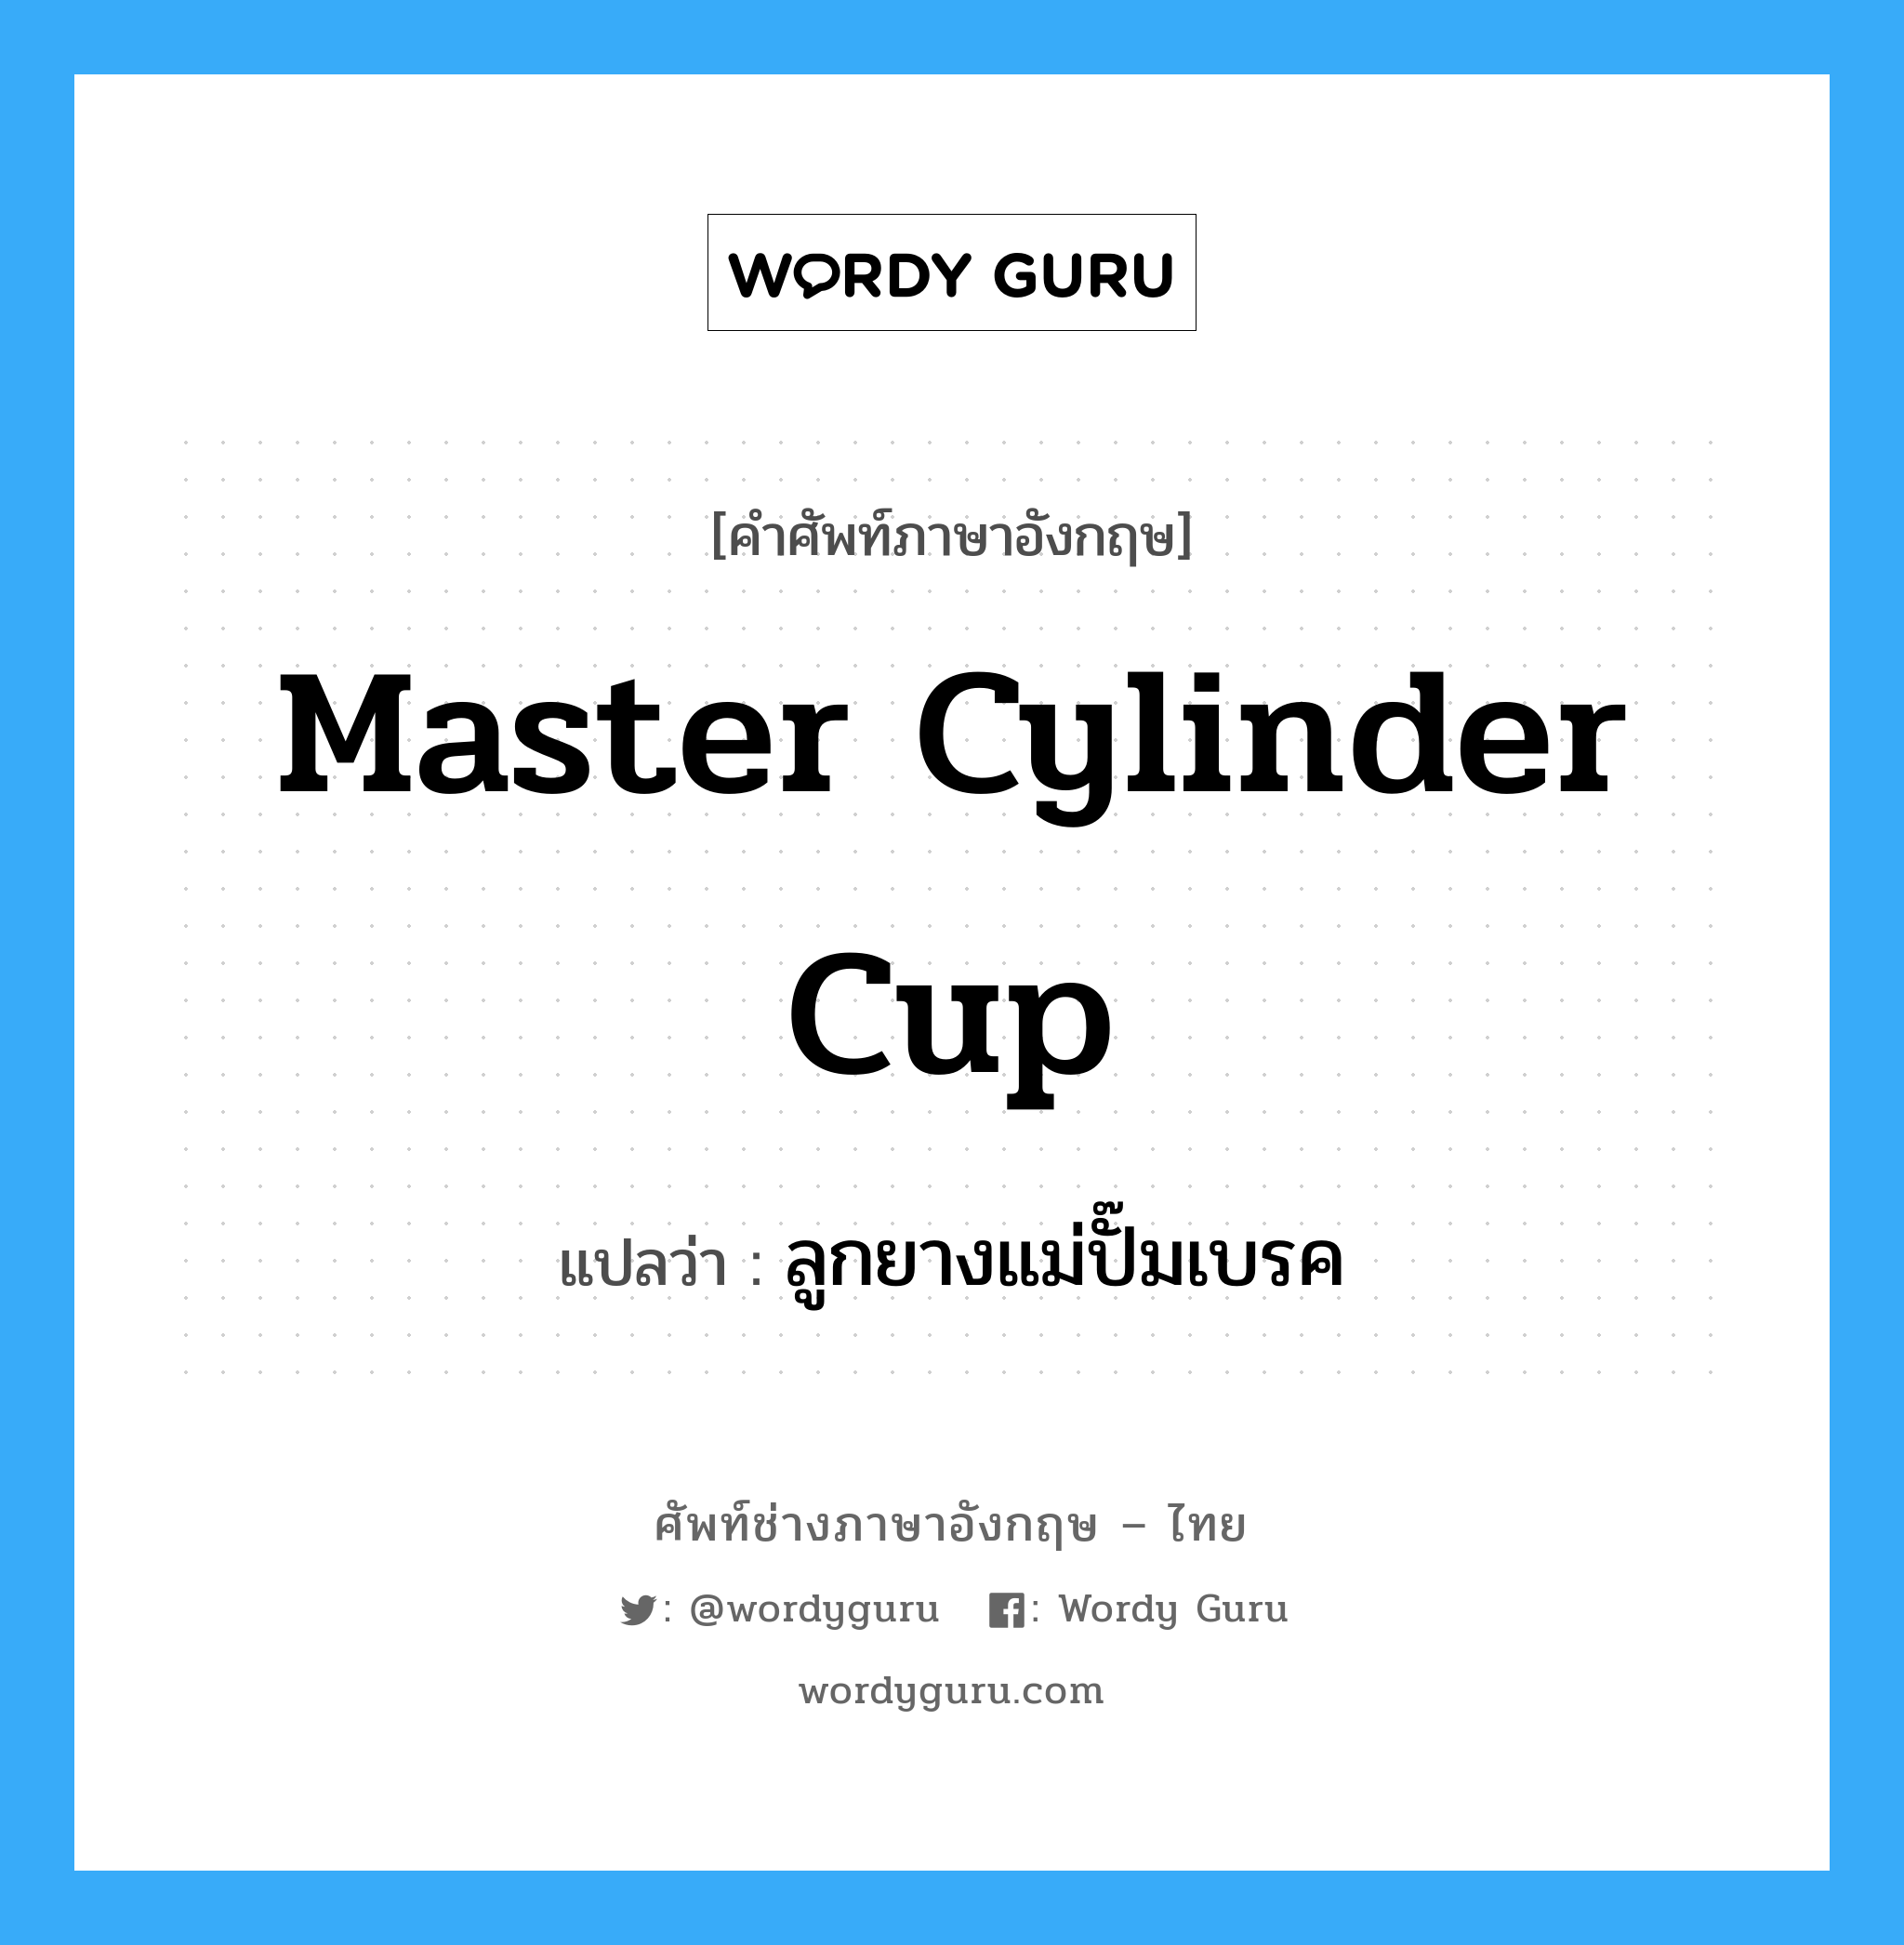 ลูกยางแม่ปั๊มเบรค ภาษาอังกฤษ?, คำศัพท์ช่างภาษาอังกฤษ - ไทย ลูกยางแม่ปั๊มเบรค คำศัพท์ภาษาอังกฤษ ลูกยางแม่ปั๊มเบรค แปลว่า master cylinder cup